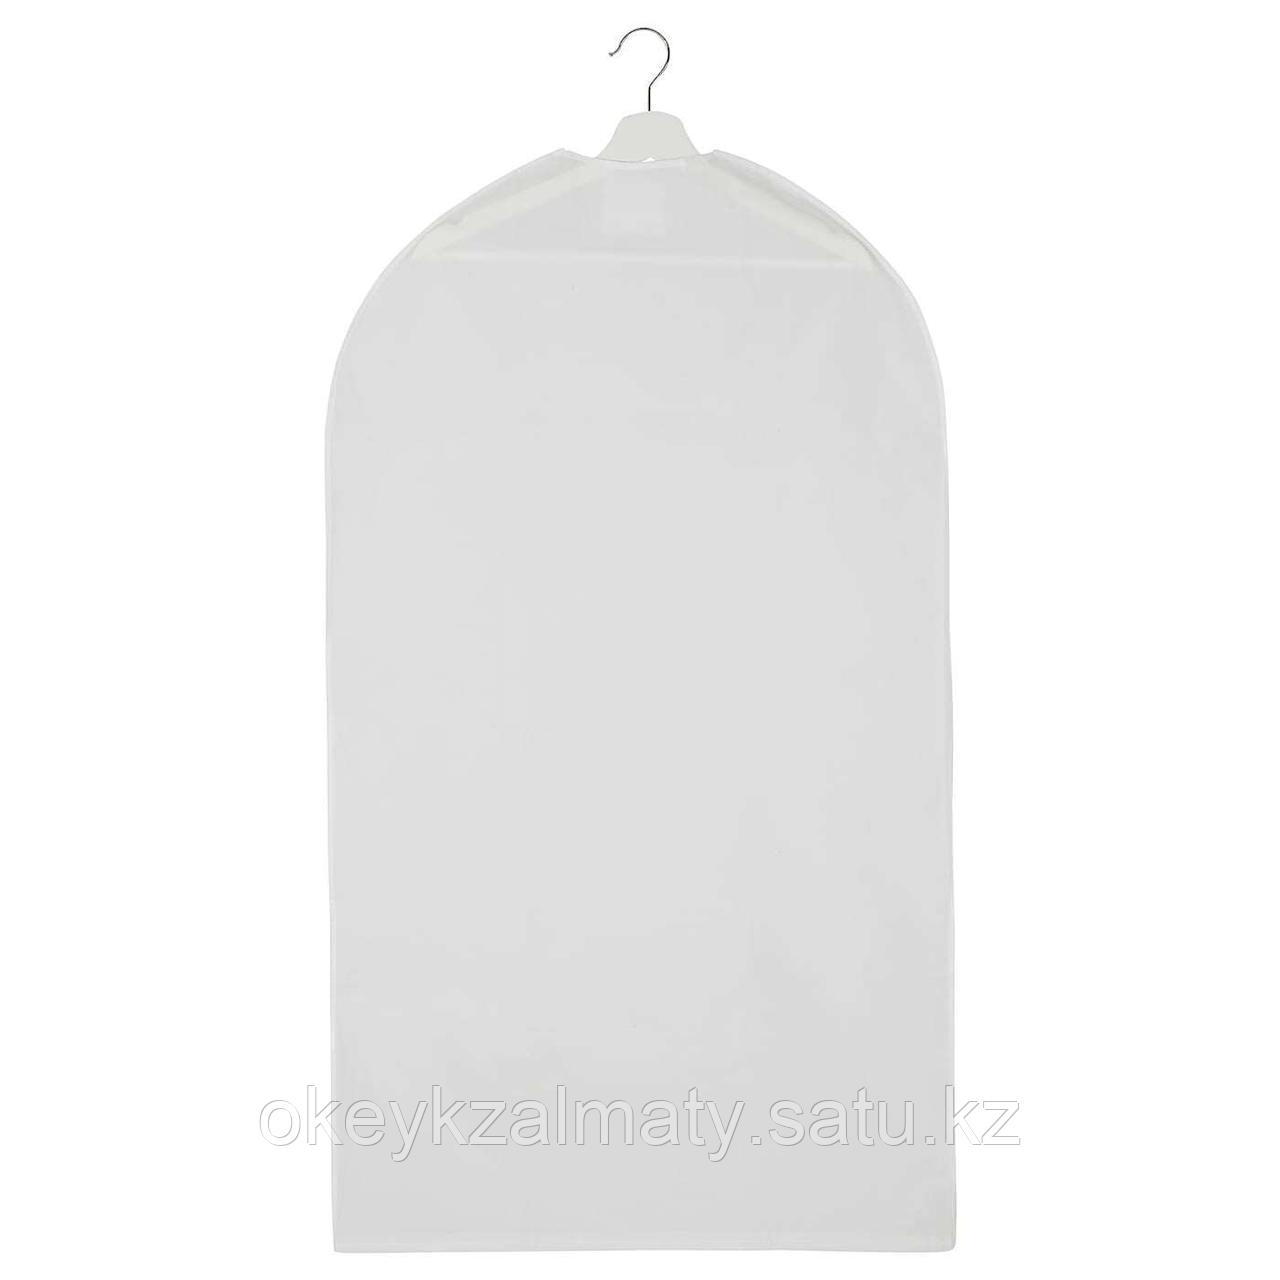 IKEA: Чехол для одежды, прозрачный белый, 60x105 см Hodda Ходда 405.031.79